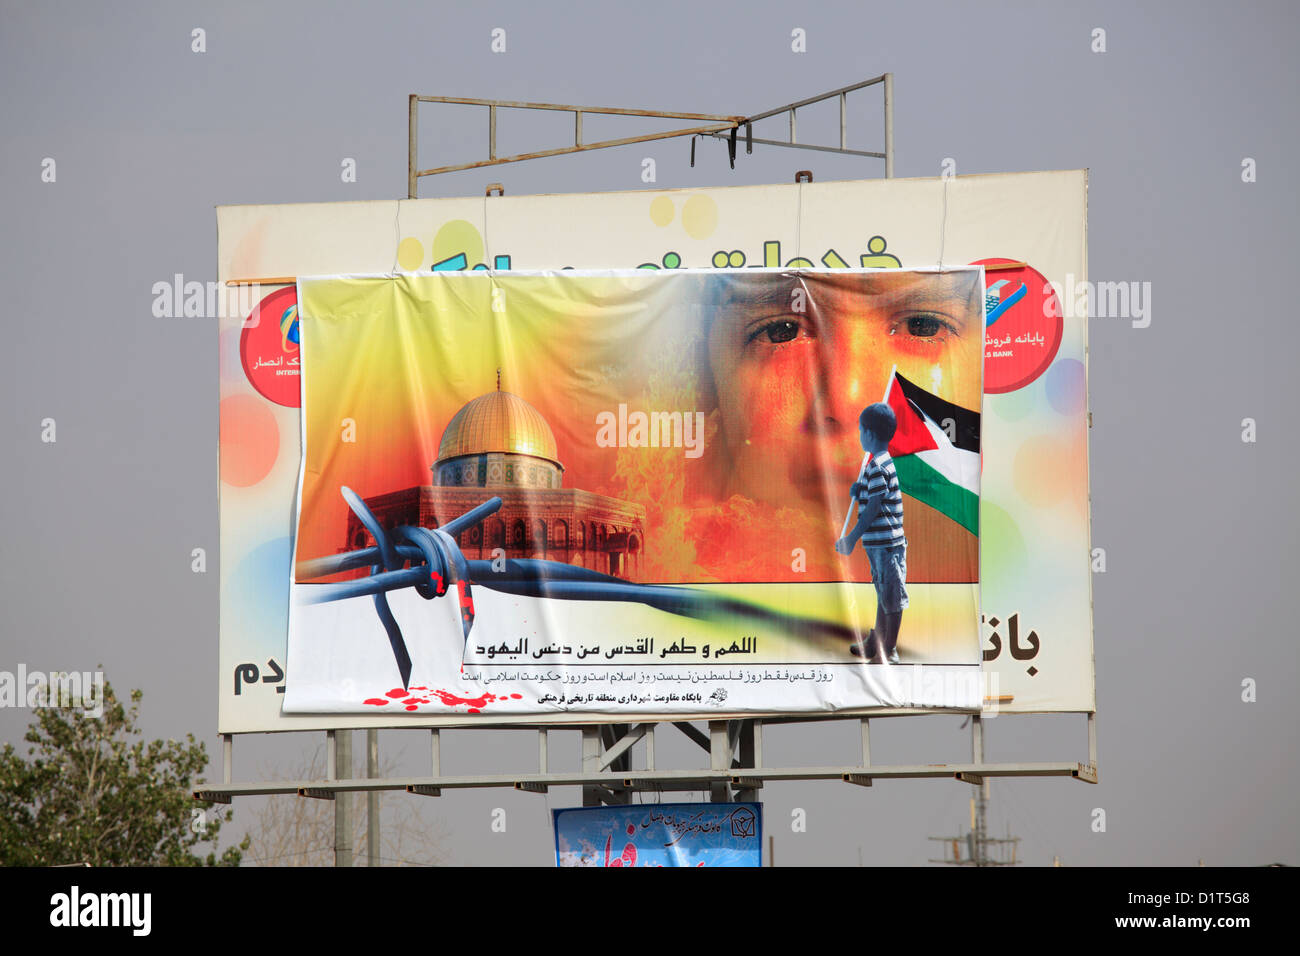 Iranian Pro-Palestinian propaganda against the state of Israel, Shiraz, Iran Stock Photo